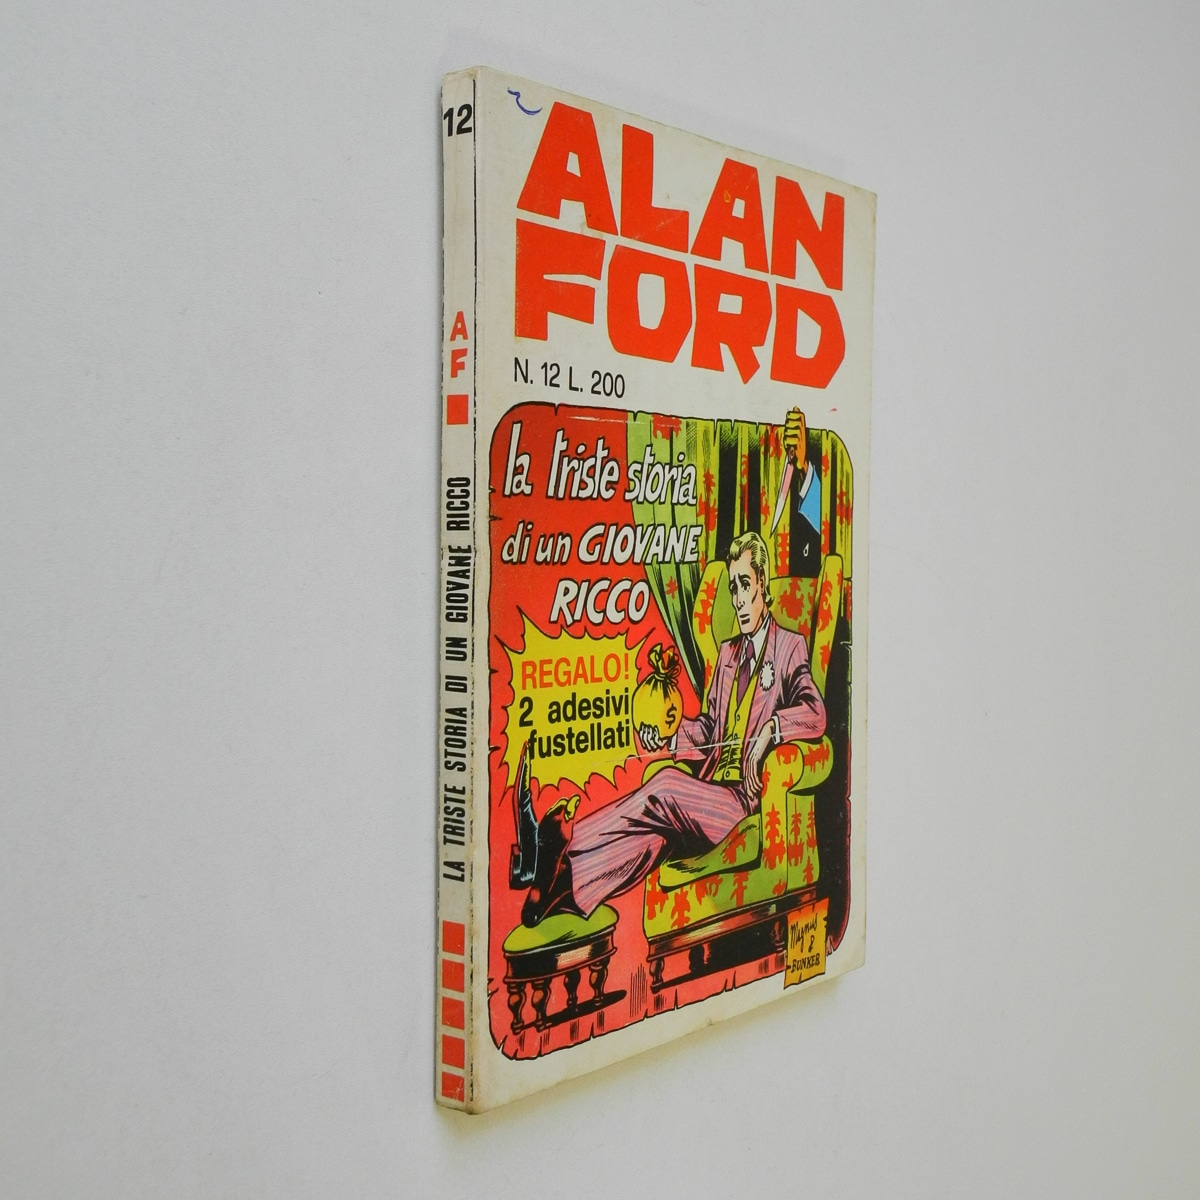 Alan Ford n. 12 con Adesivi La triste storia di un giovane ricco